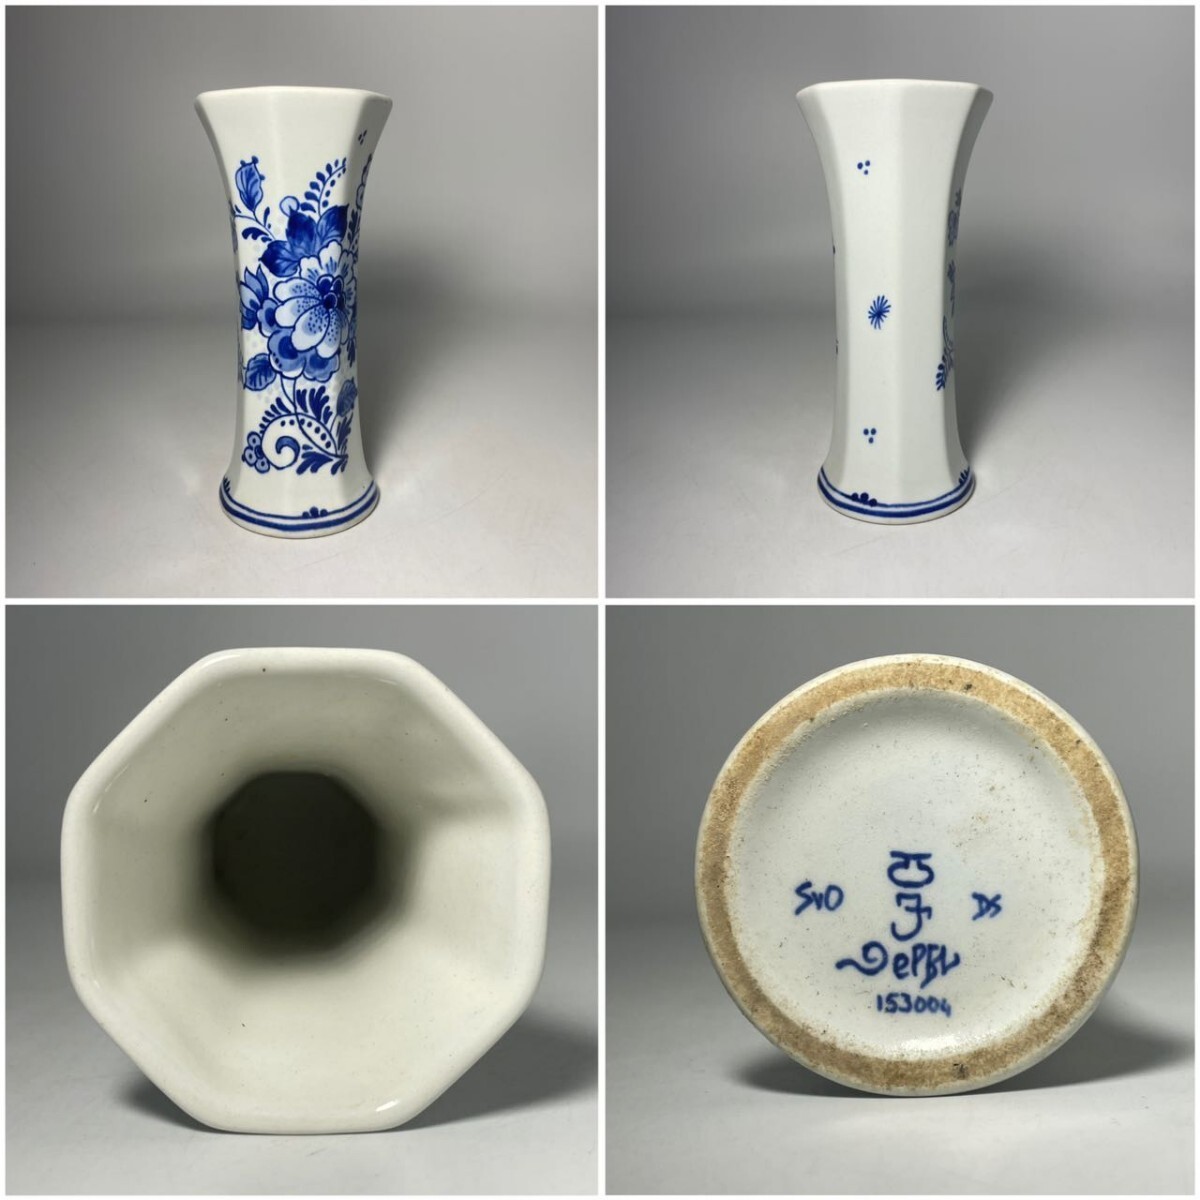 AS675 West fine art De Porceleyne Fles Royal * Dell fto vase & plate put it together 3 point Holland ceramics hand .. Vintage 